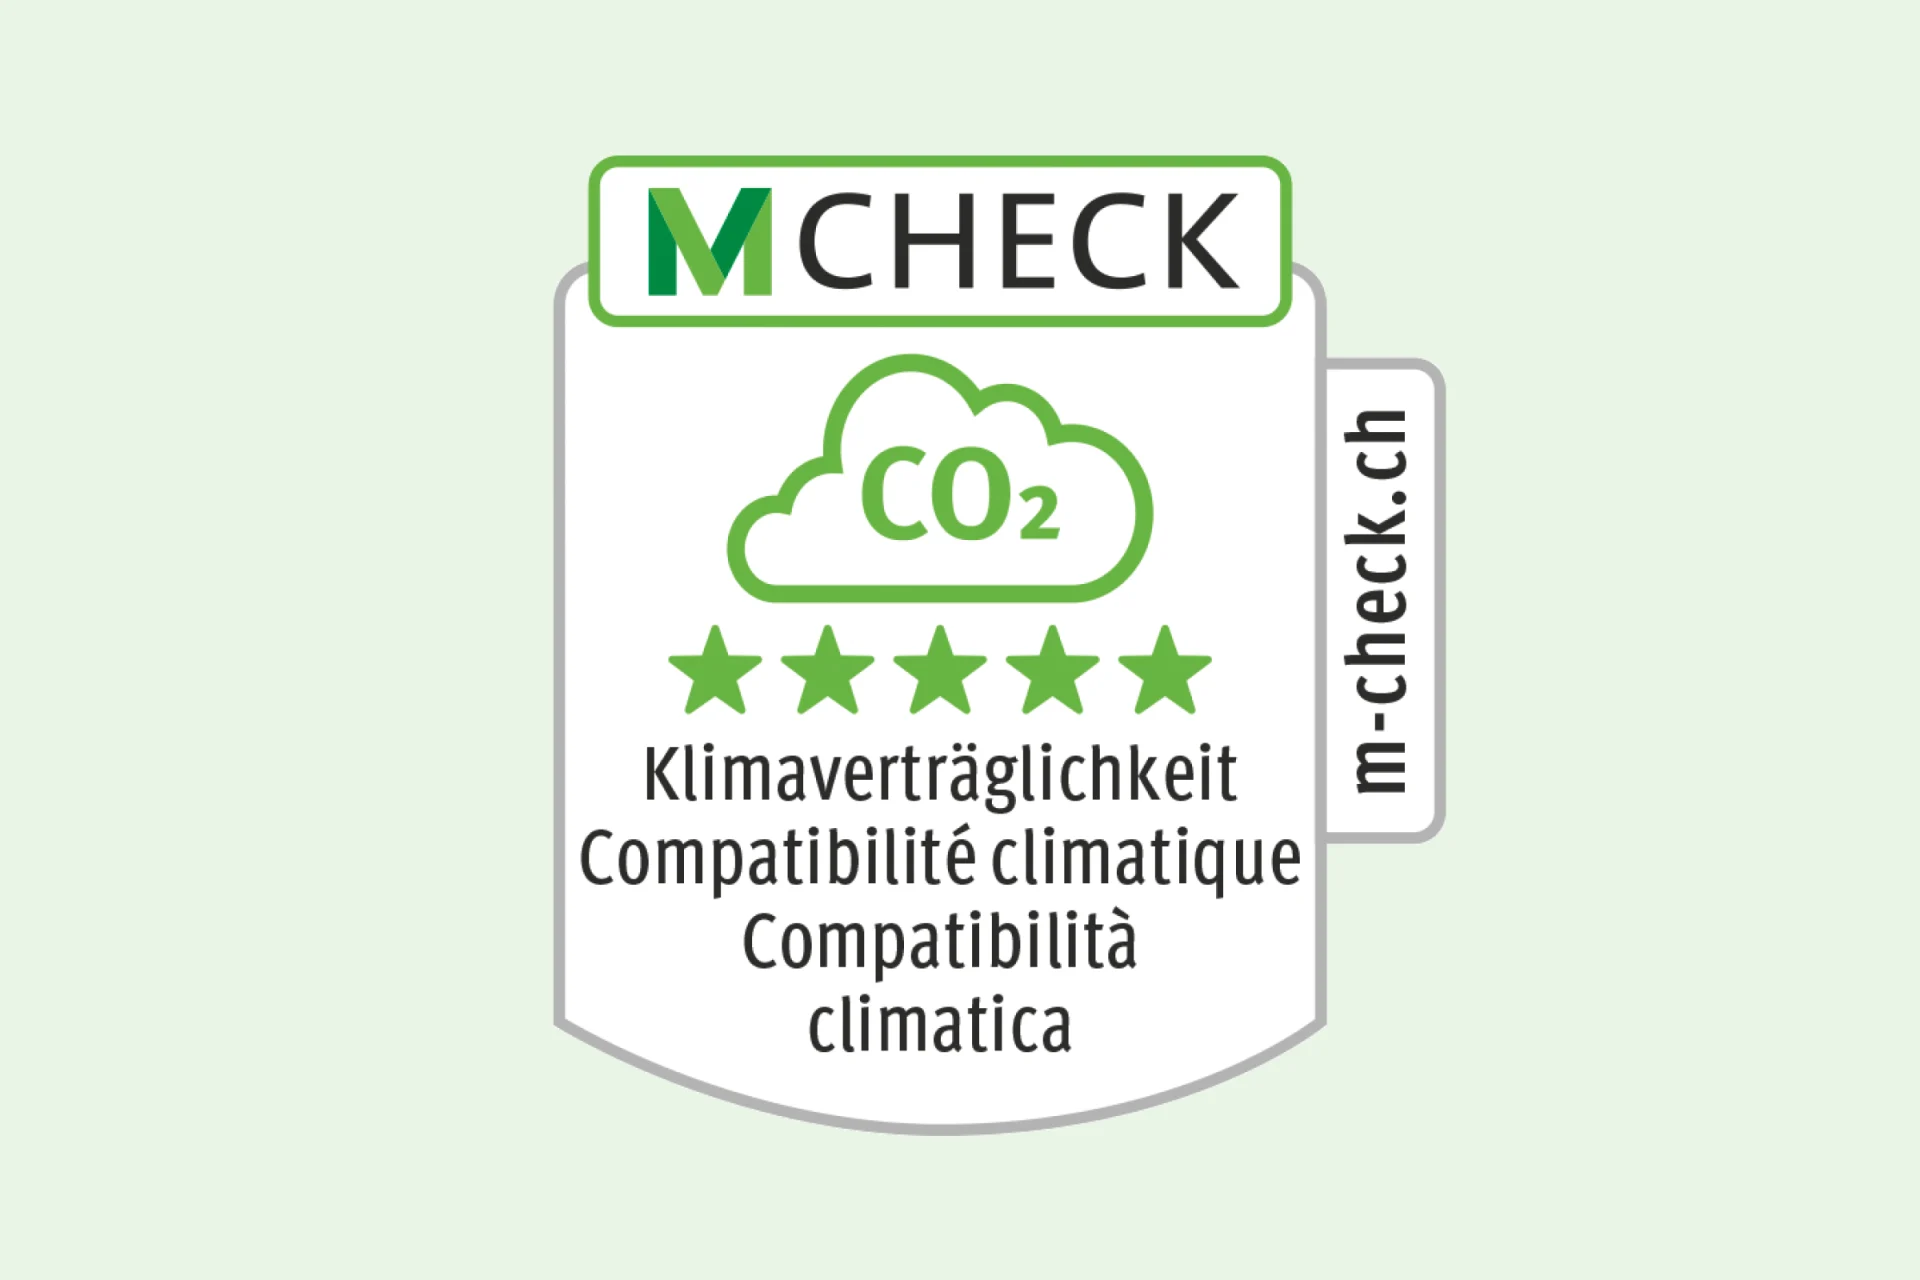 Icona M-Check per la compatibilità climatica con 5 stelle verdi.